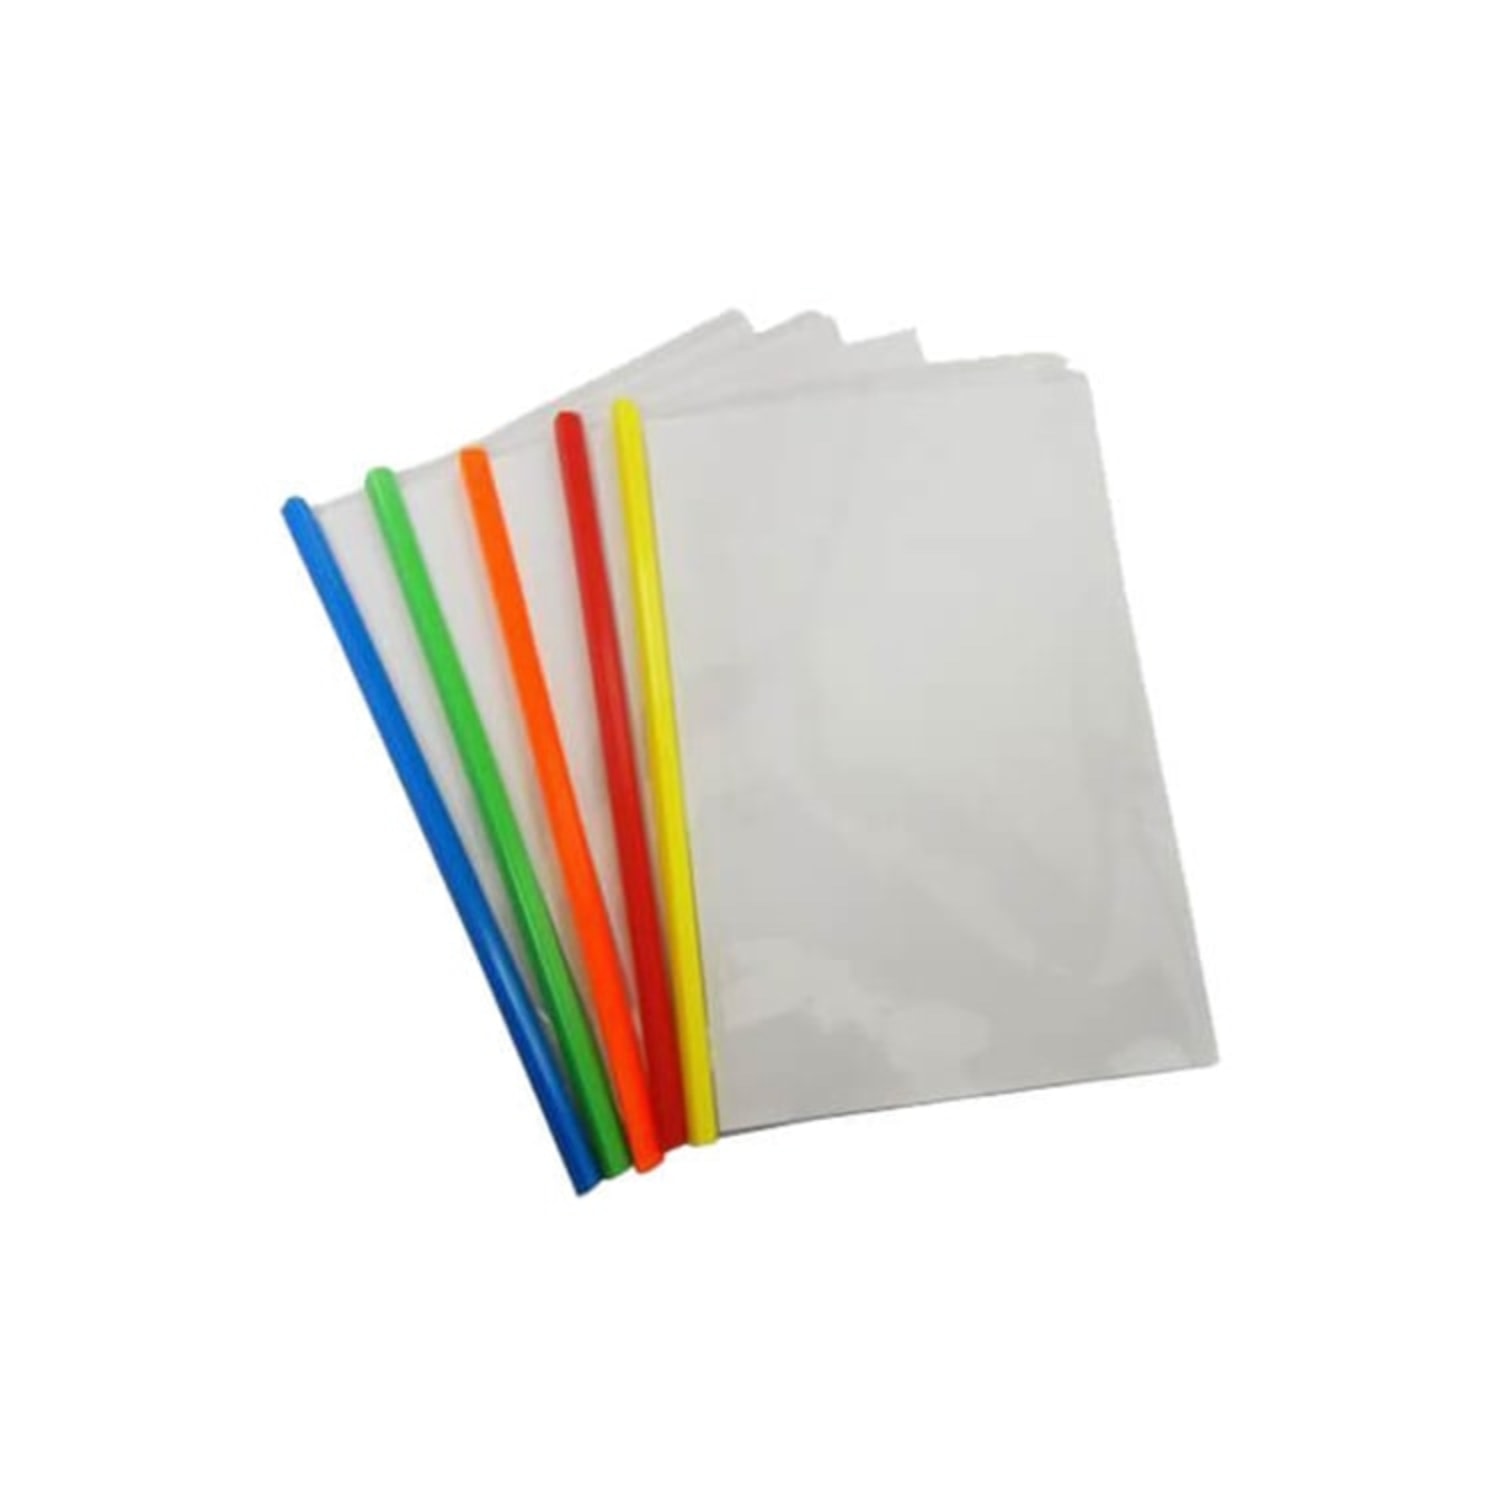 Стик файл. A4 Clear Plastic Sliding Bar file folder.